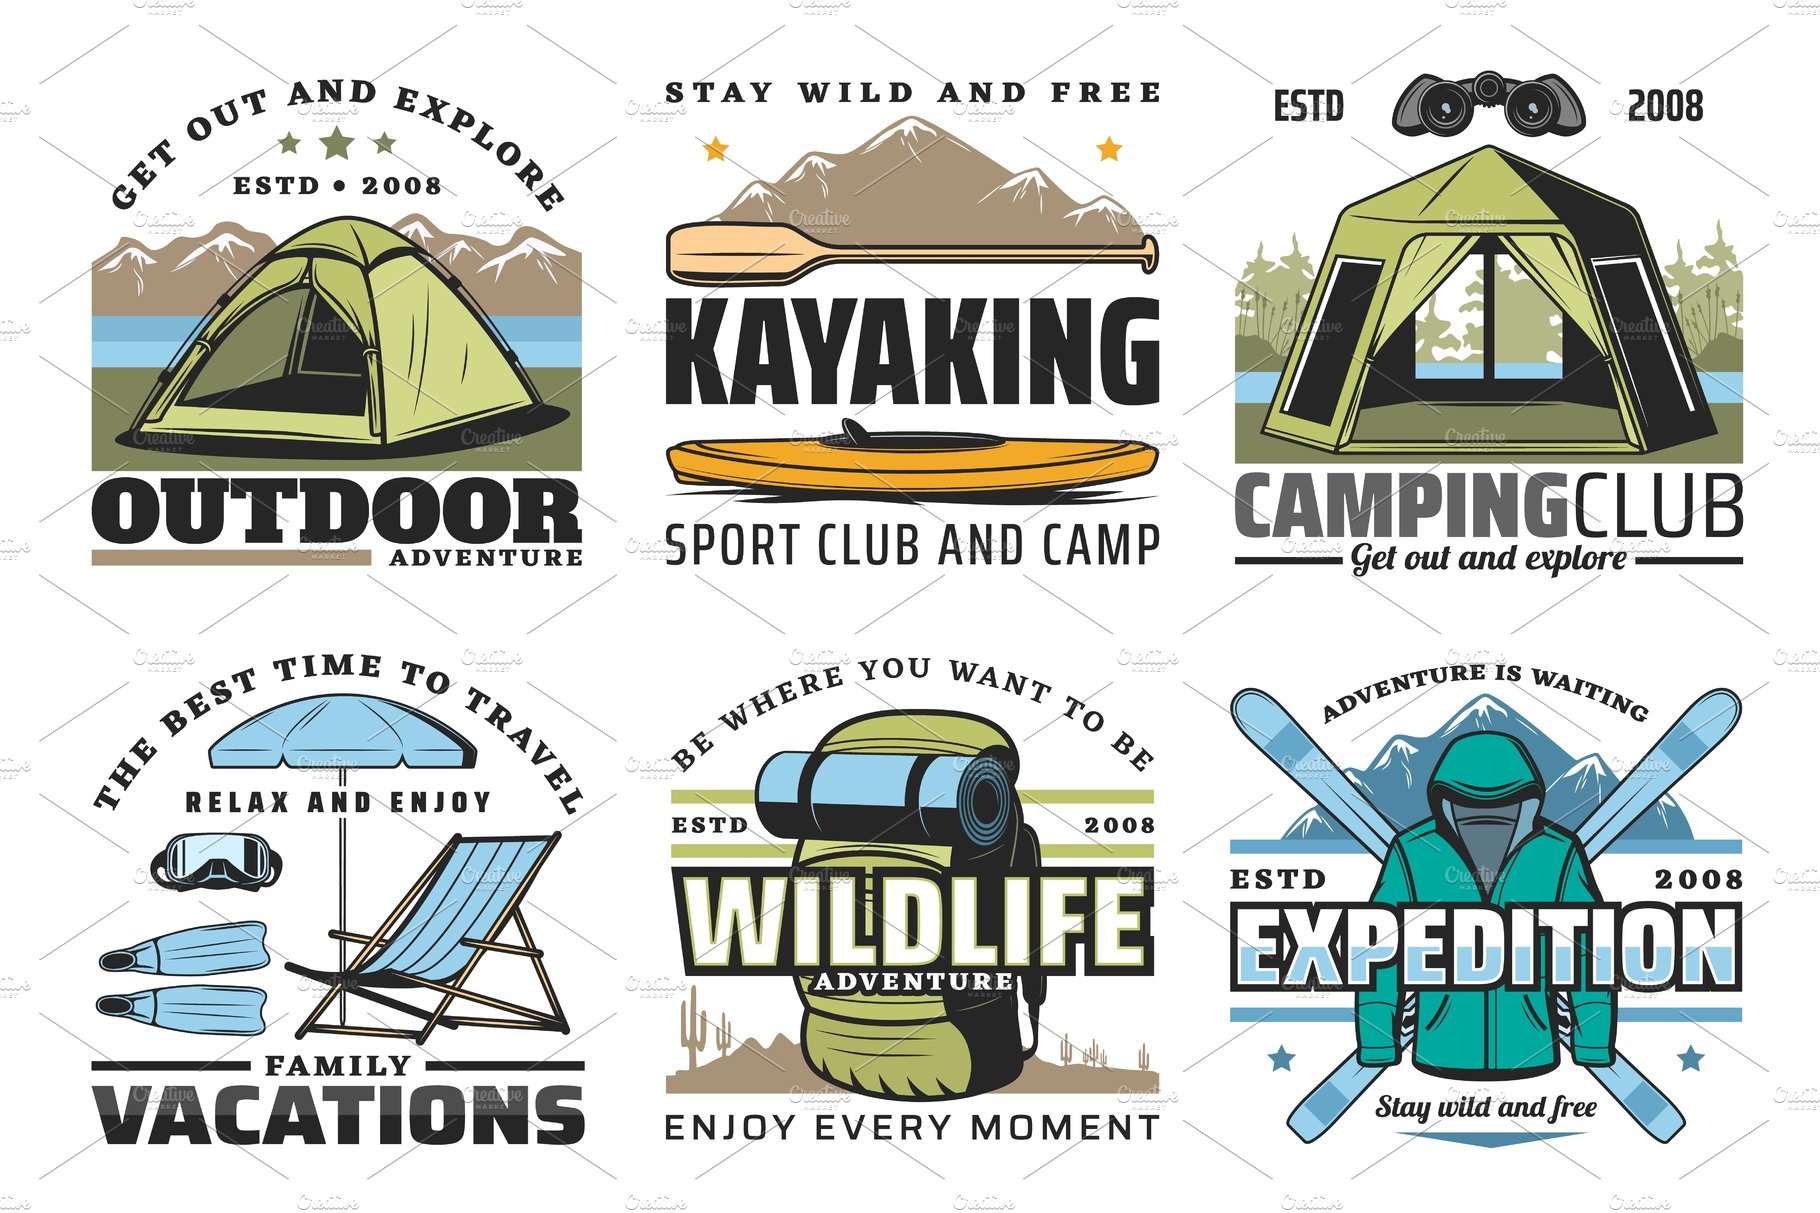 Kayaking, camping, diving, hiking cover image.